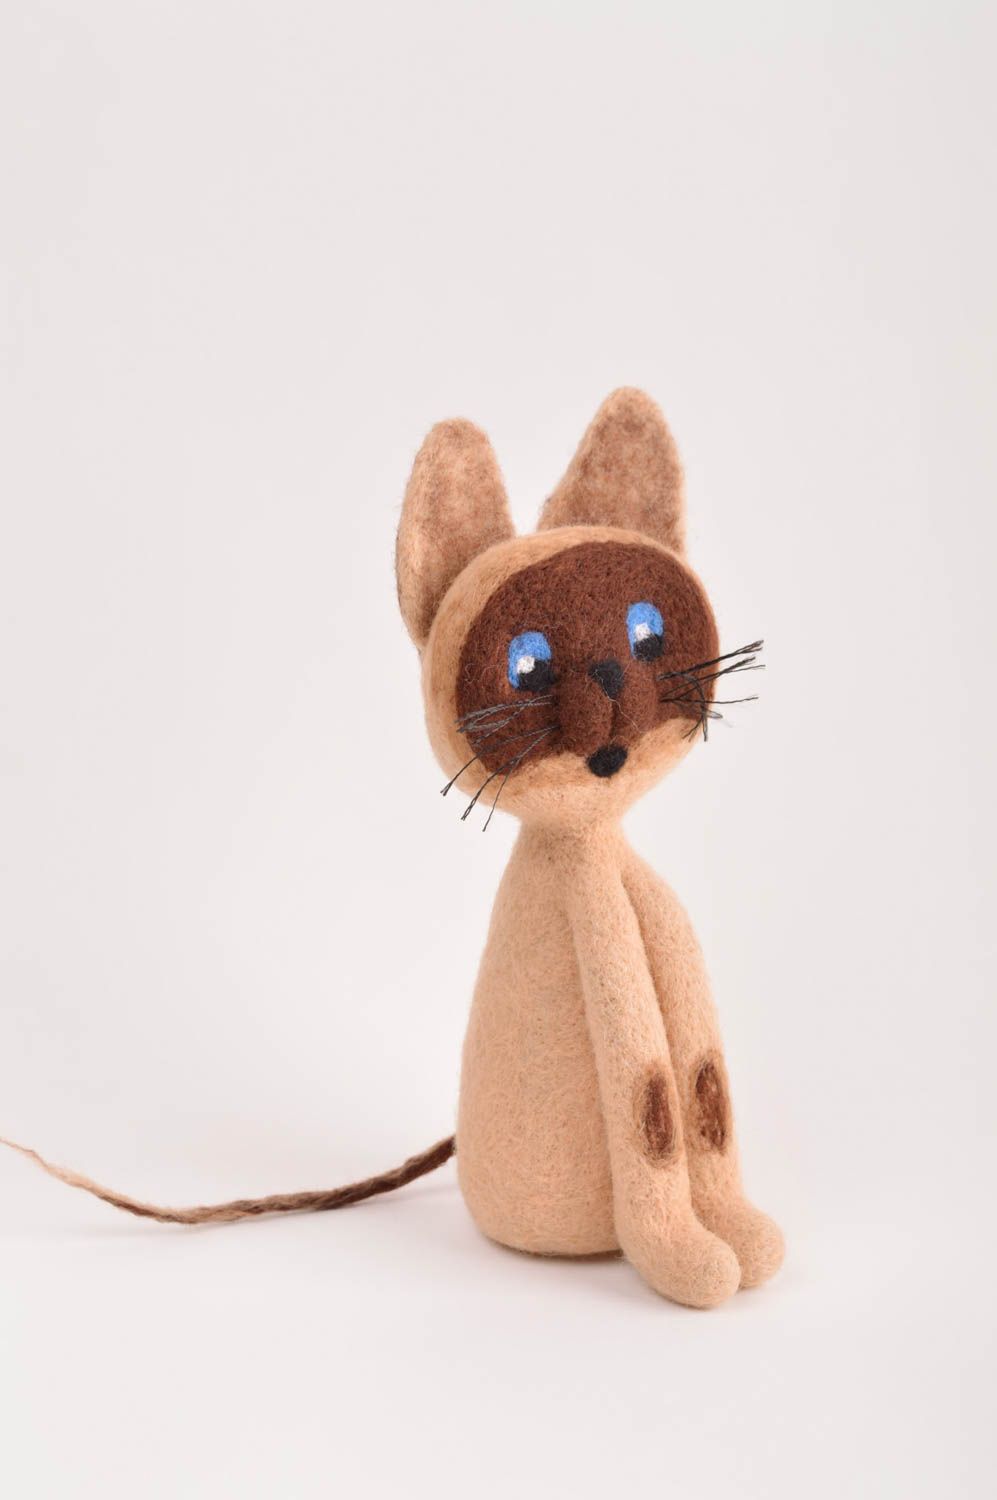 Gefilzte Figur handgefertigt Katze Spielzeug originelles Geschenk in Braun foto 2